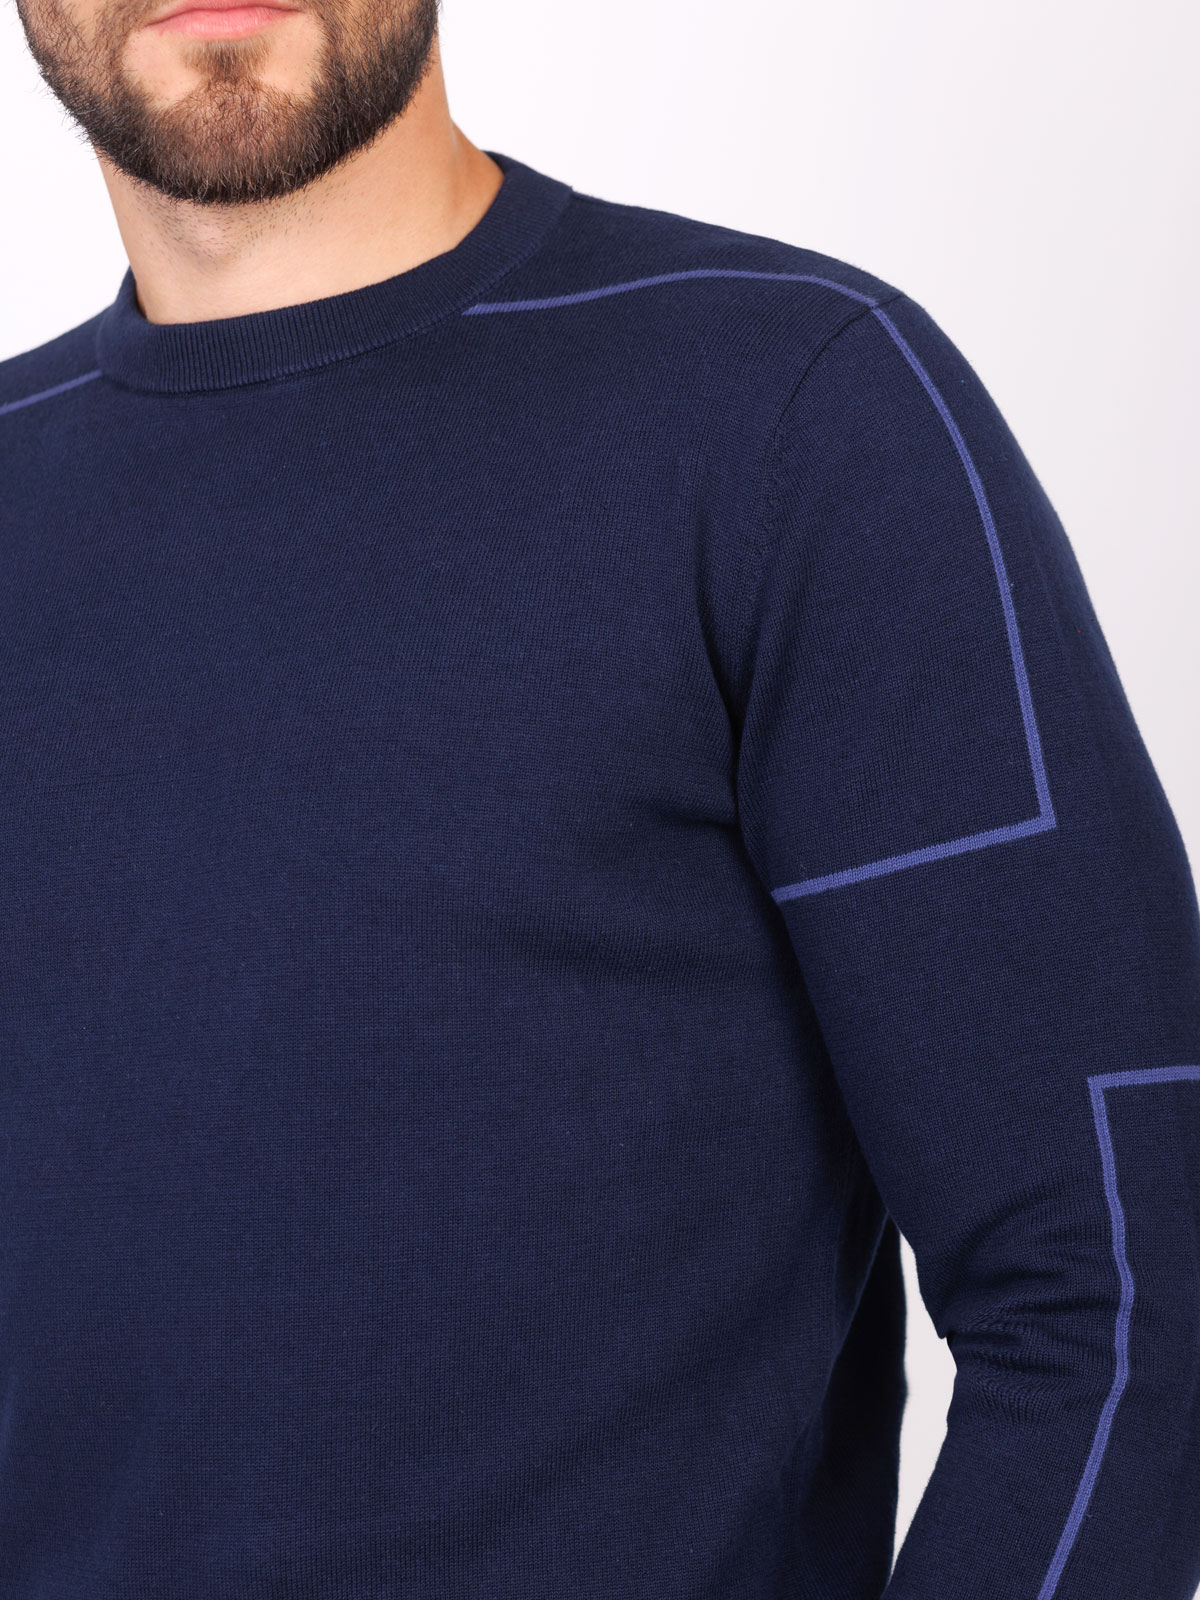 Ανδρική μπλούζα σε σκούρο μπλε - 35313 € 38.81 img3